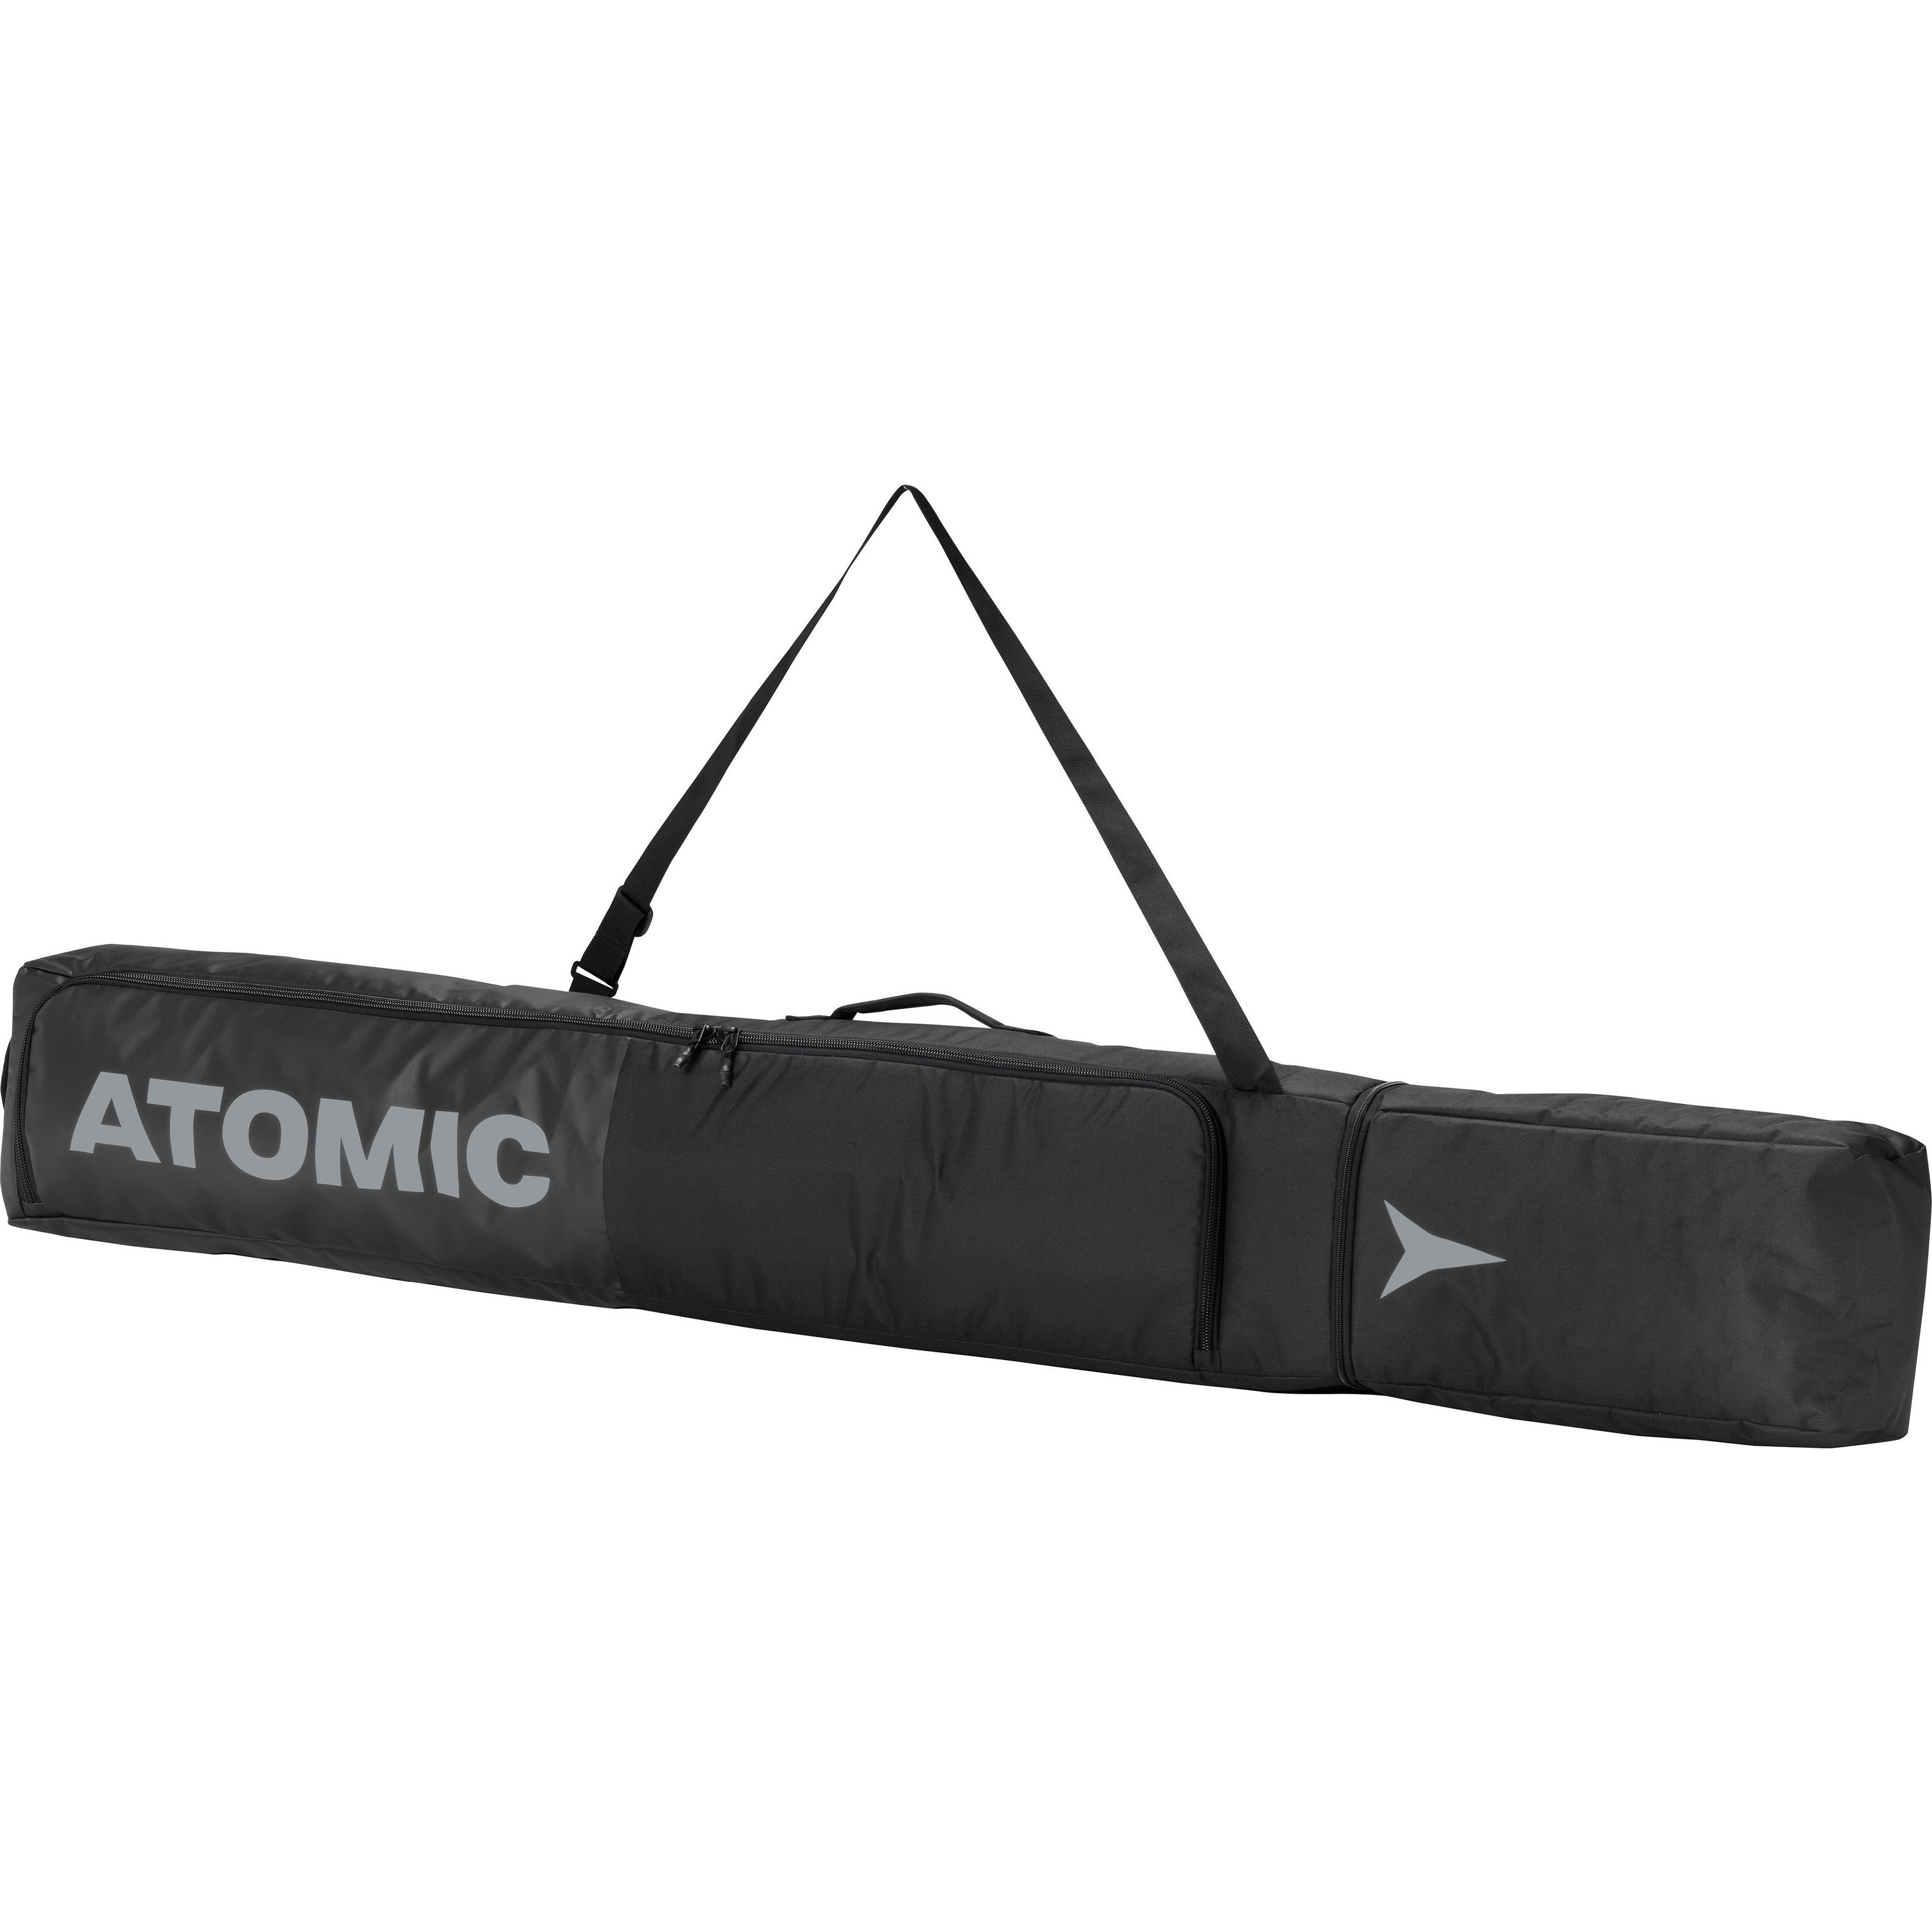 Image of ATOMIC SKI BAG Skisack